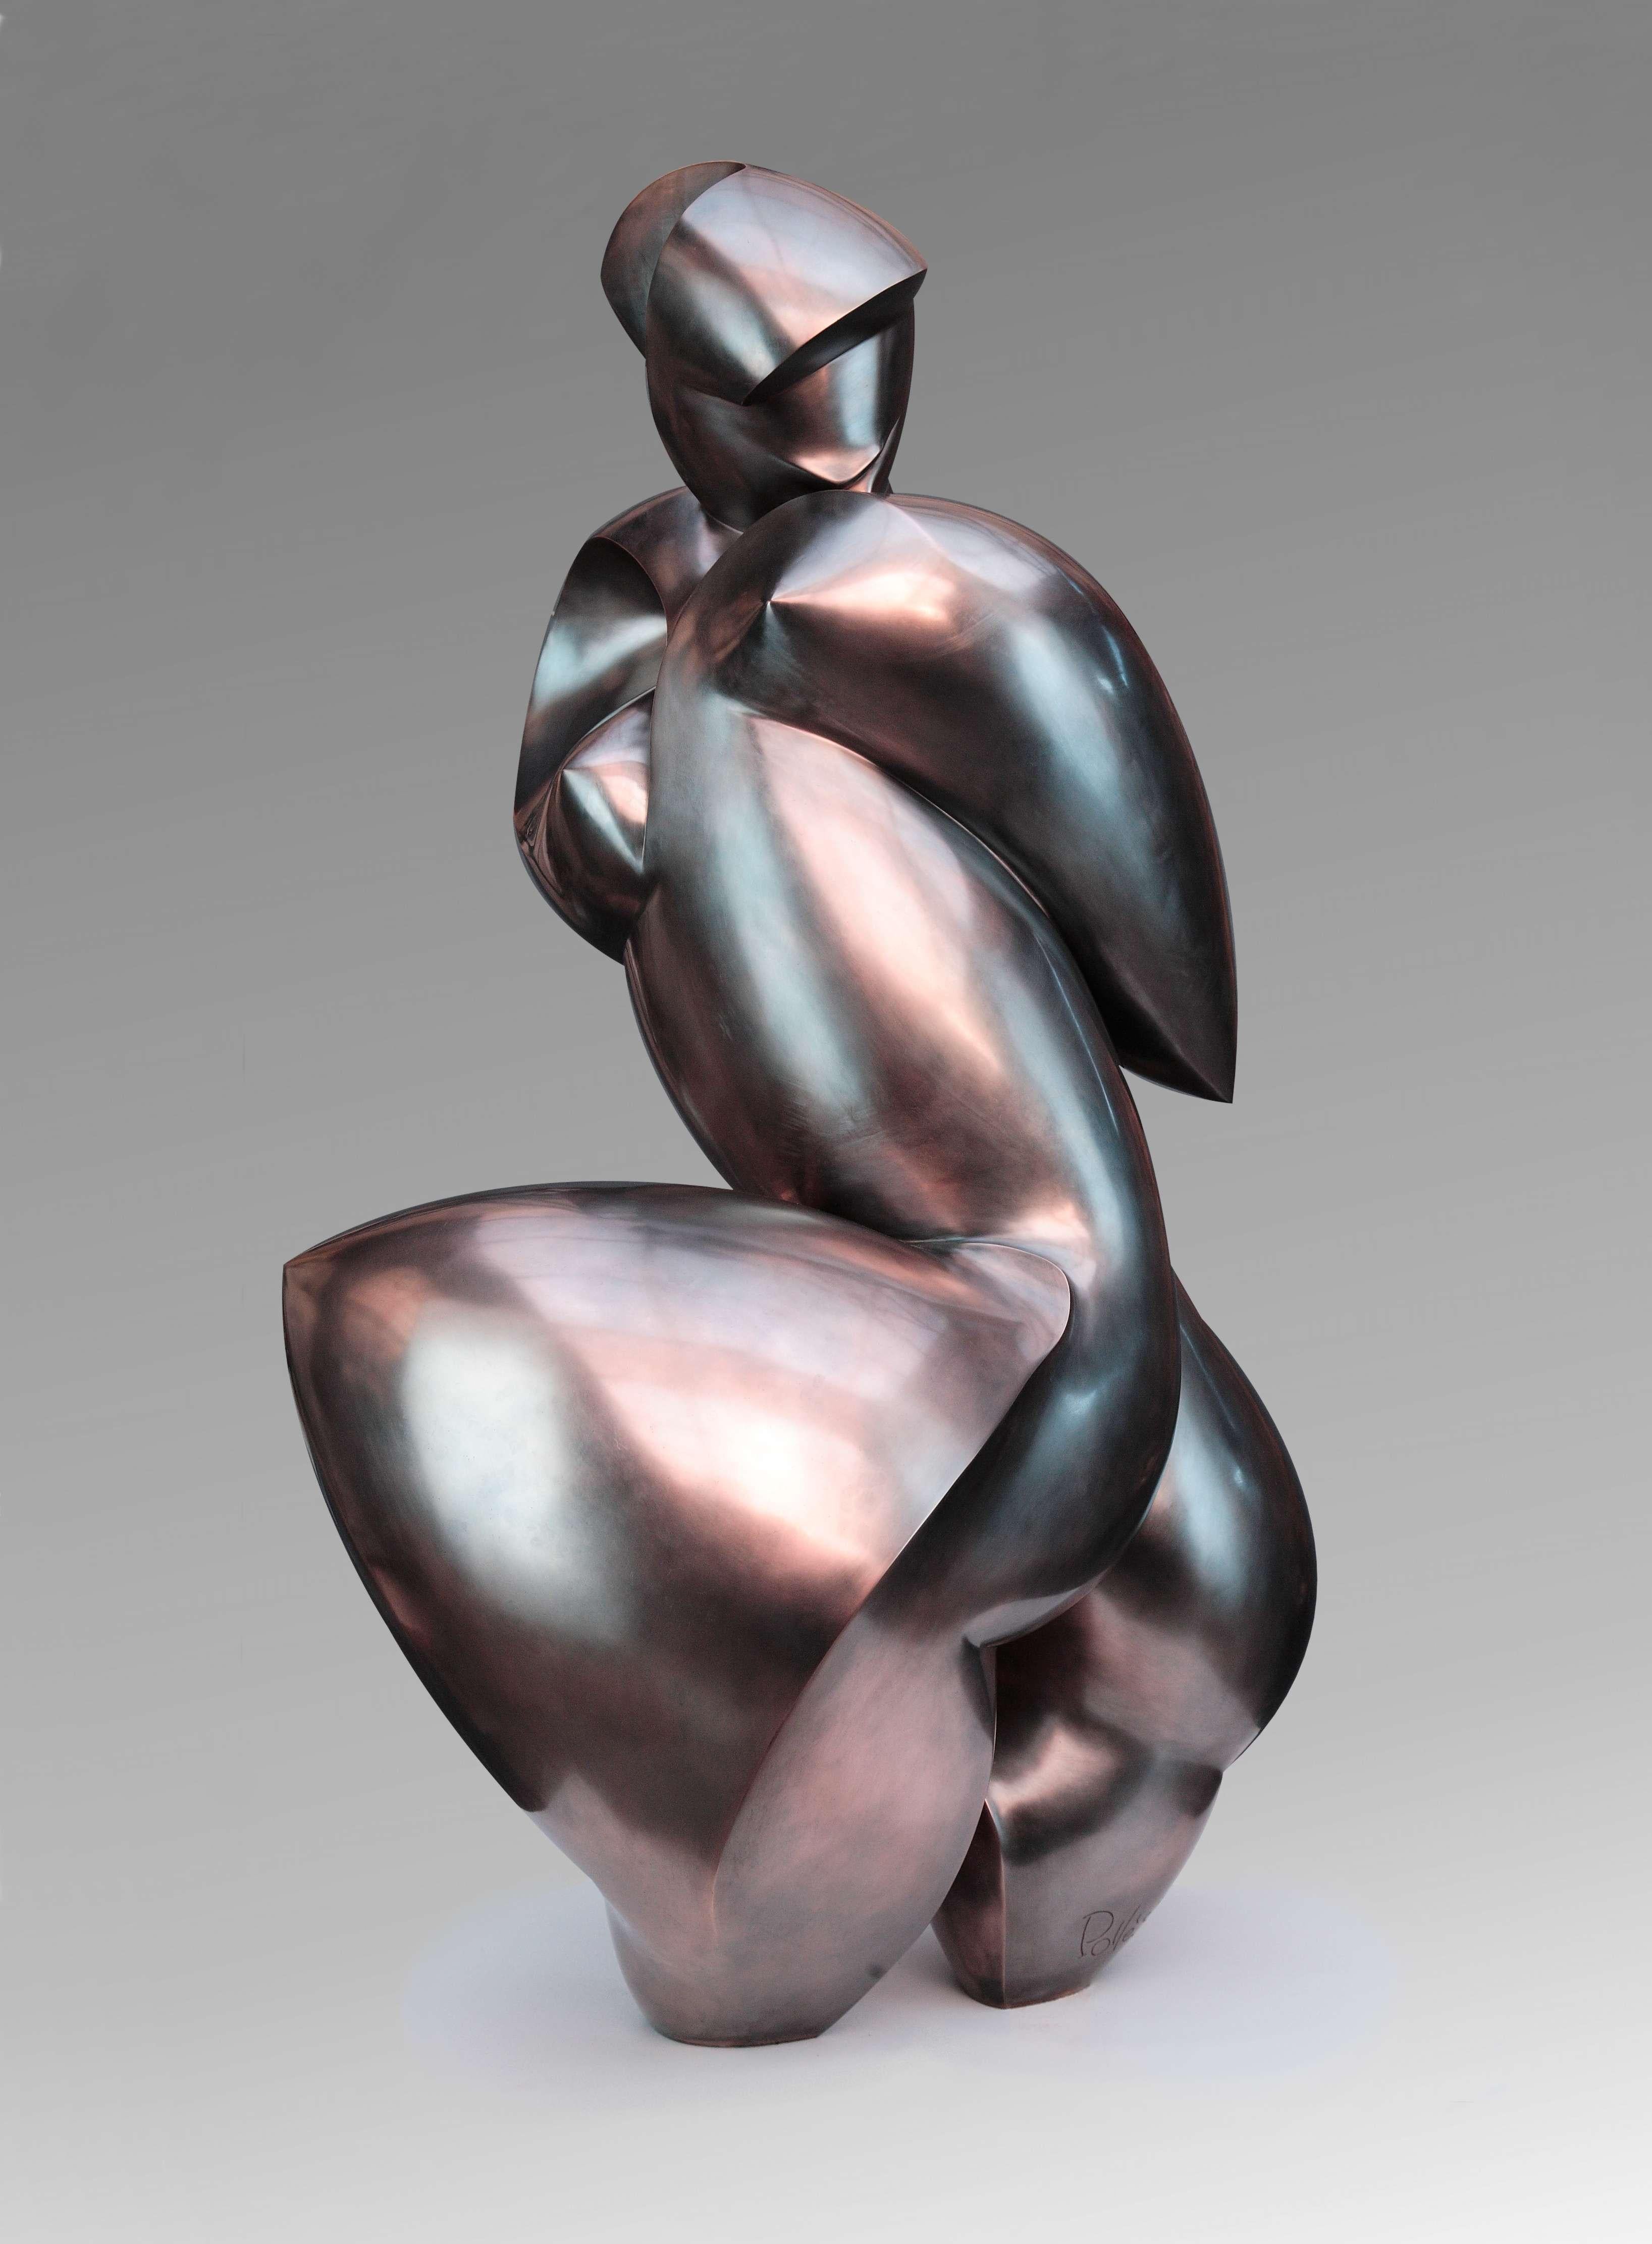 Pollès - Bronze-Skulptur - Yterbine
Bronze
4/4
Erstellt 1998, gecastet 2003
120 x 85 x 70 cm
Signiert und nummeriert

BIOGRAPHIE
Pollès wurde 1945 in Paris geboren
Wie Leonard de Vinci auf der Suche nach anatomischer Perfektion, nach der Darstellung